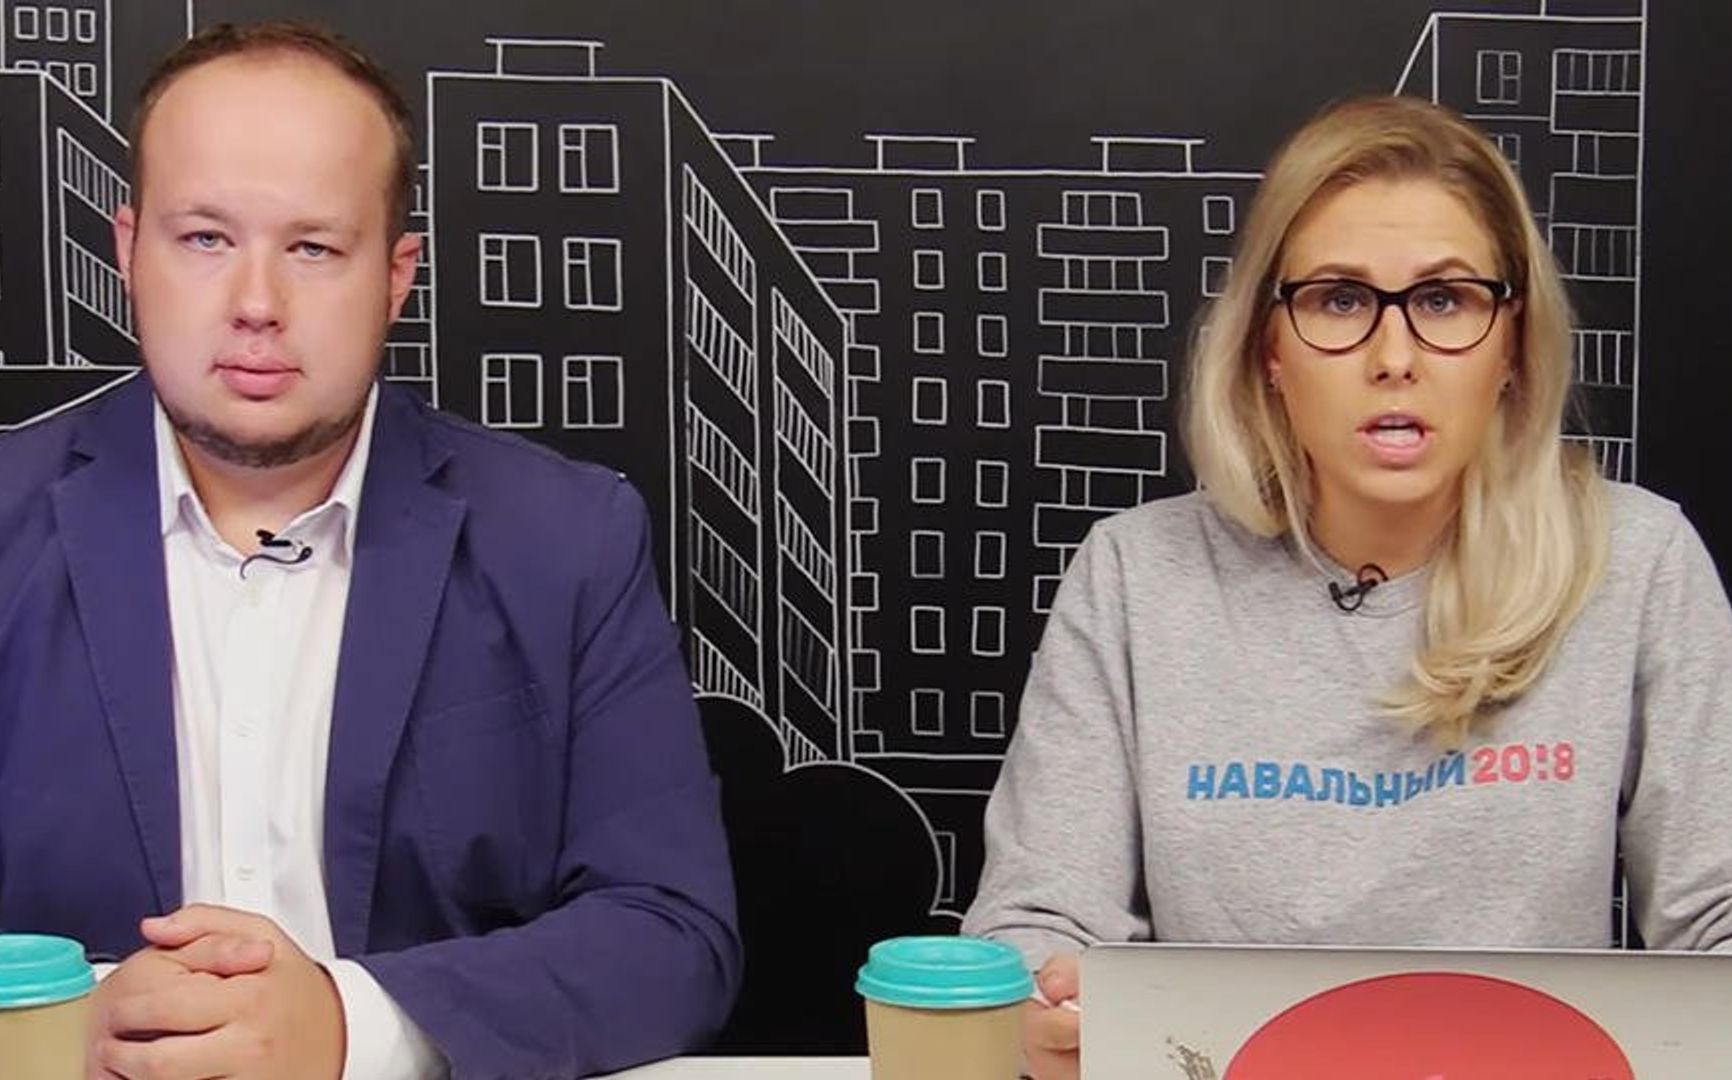 Арешти, загрози і кримінальну справу - як влада залякує громадян напередодні мітингу на підтримку Навального